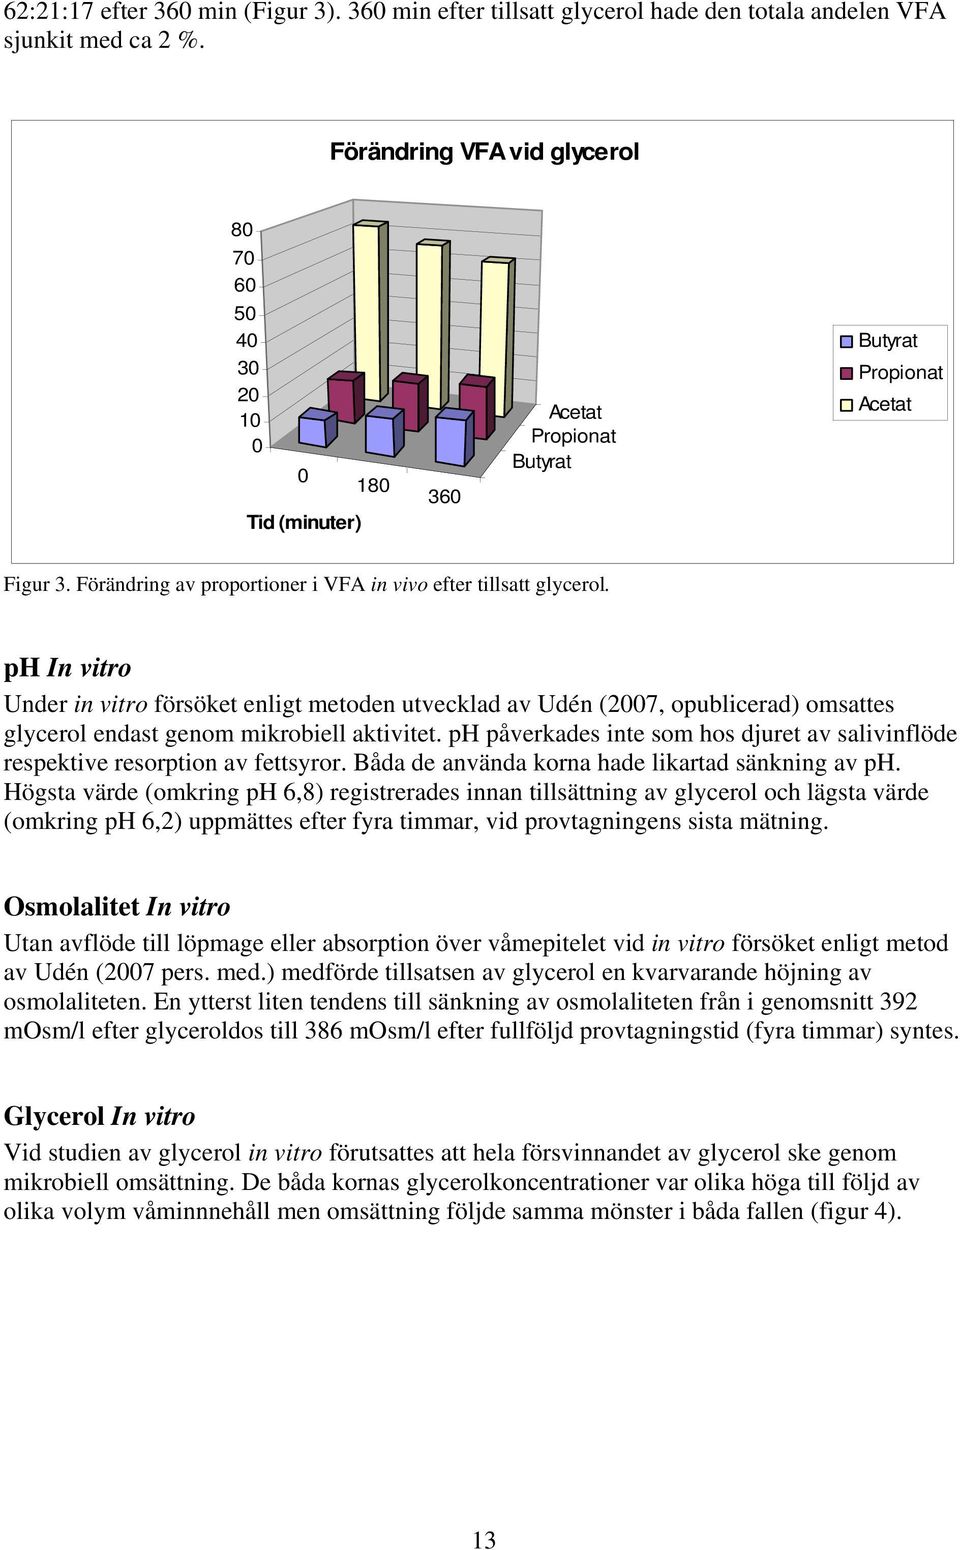 Förändring av proportioner i VFA in vivo efter tillsatt glycerol.